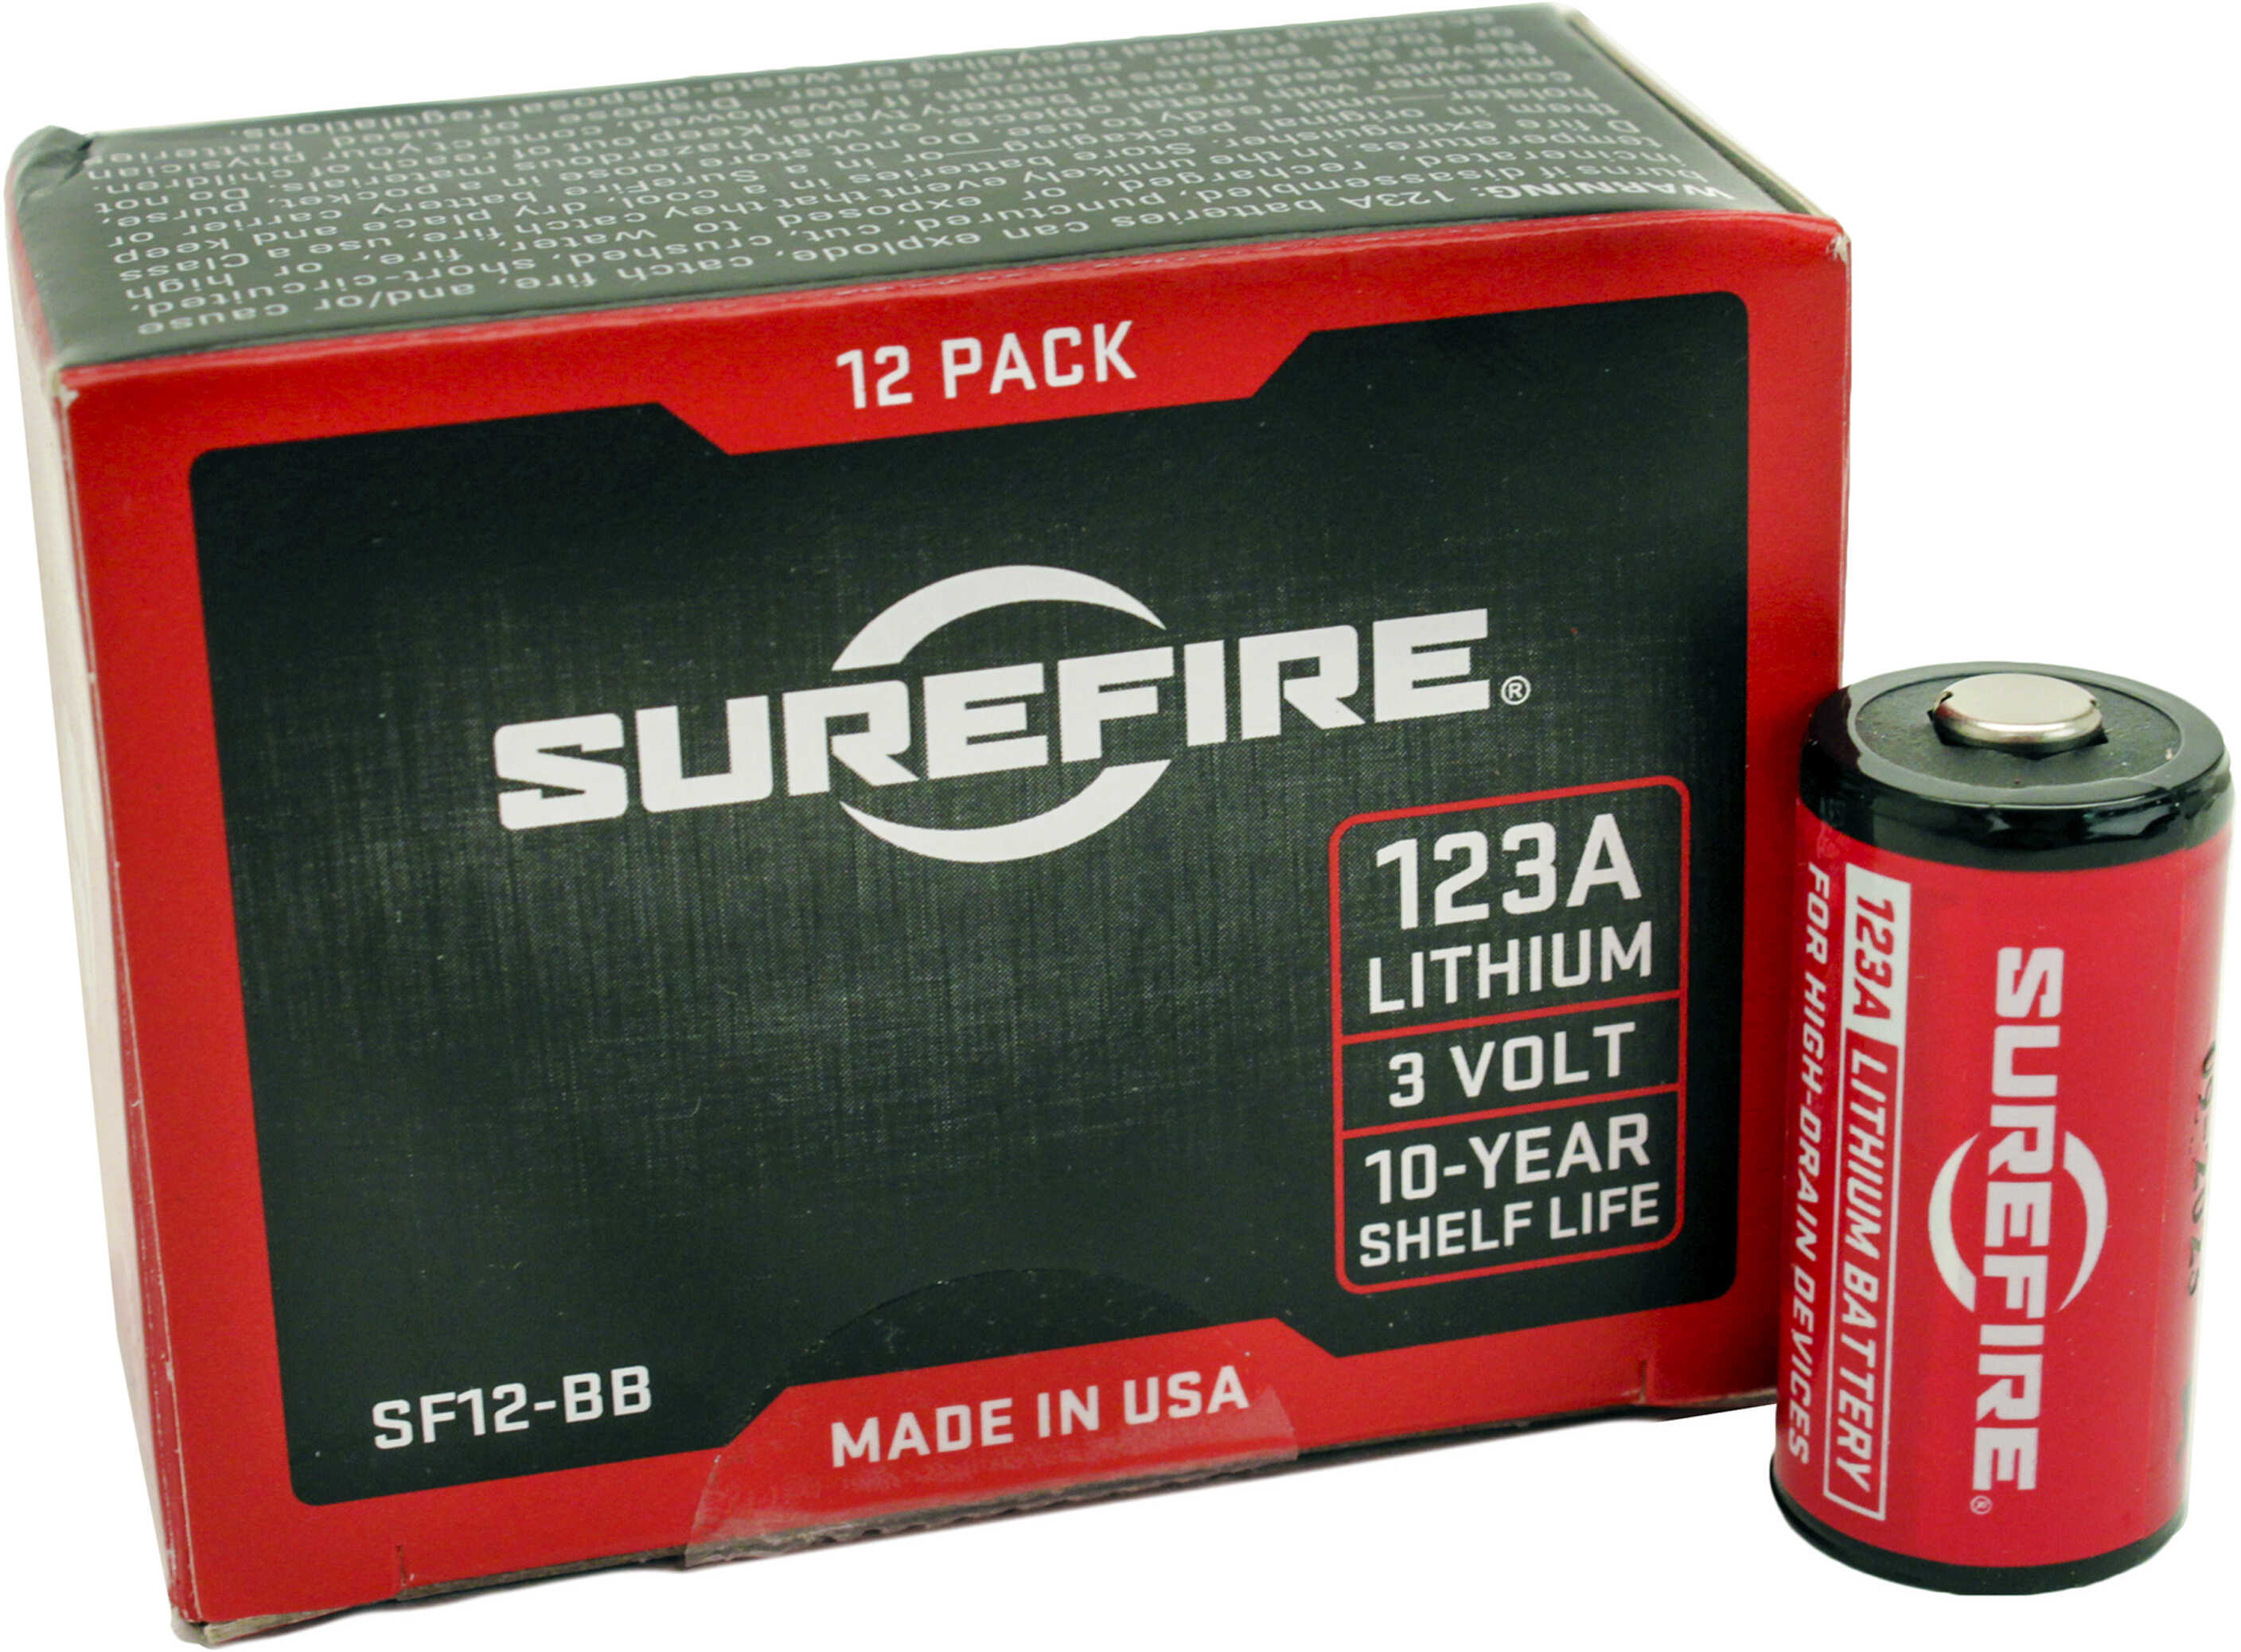 Surefire Sf123A Lithium 3Volt BATT 12Pk 12 Count Box|10 Yr Shelf Life Sf12-BB